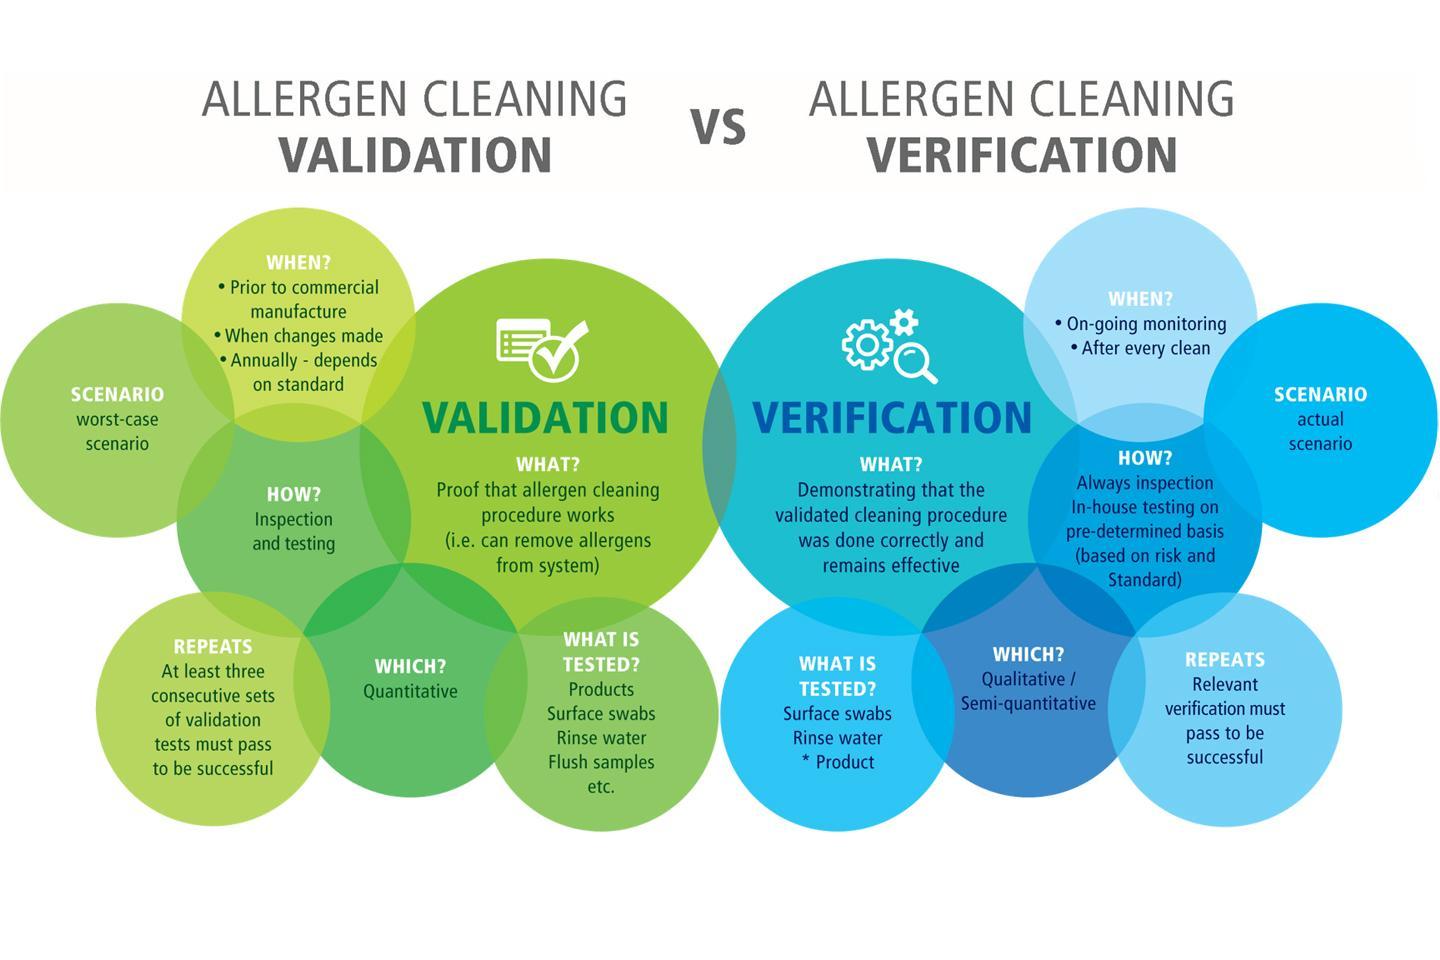 Allergen Cleaning Validation vs Allergen Cleaning Verification